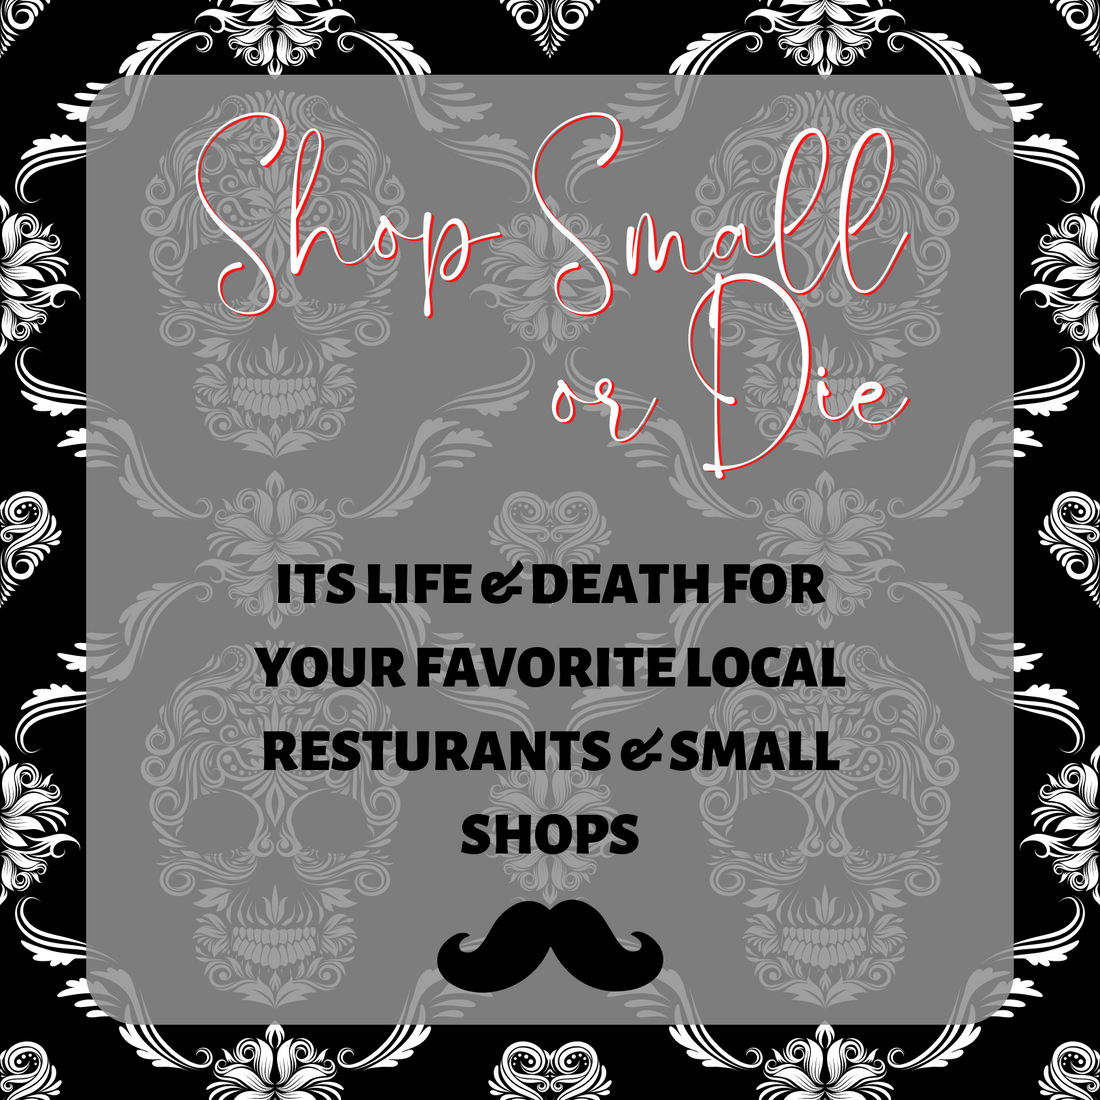 Shop Local or Die